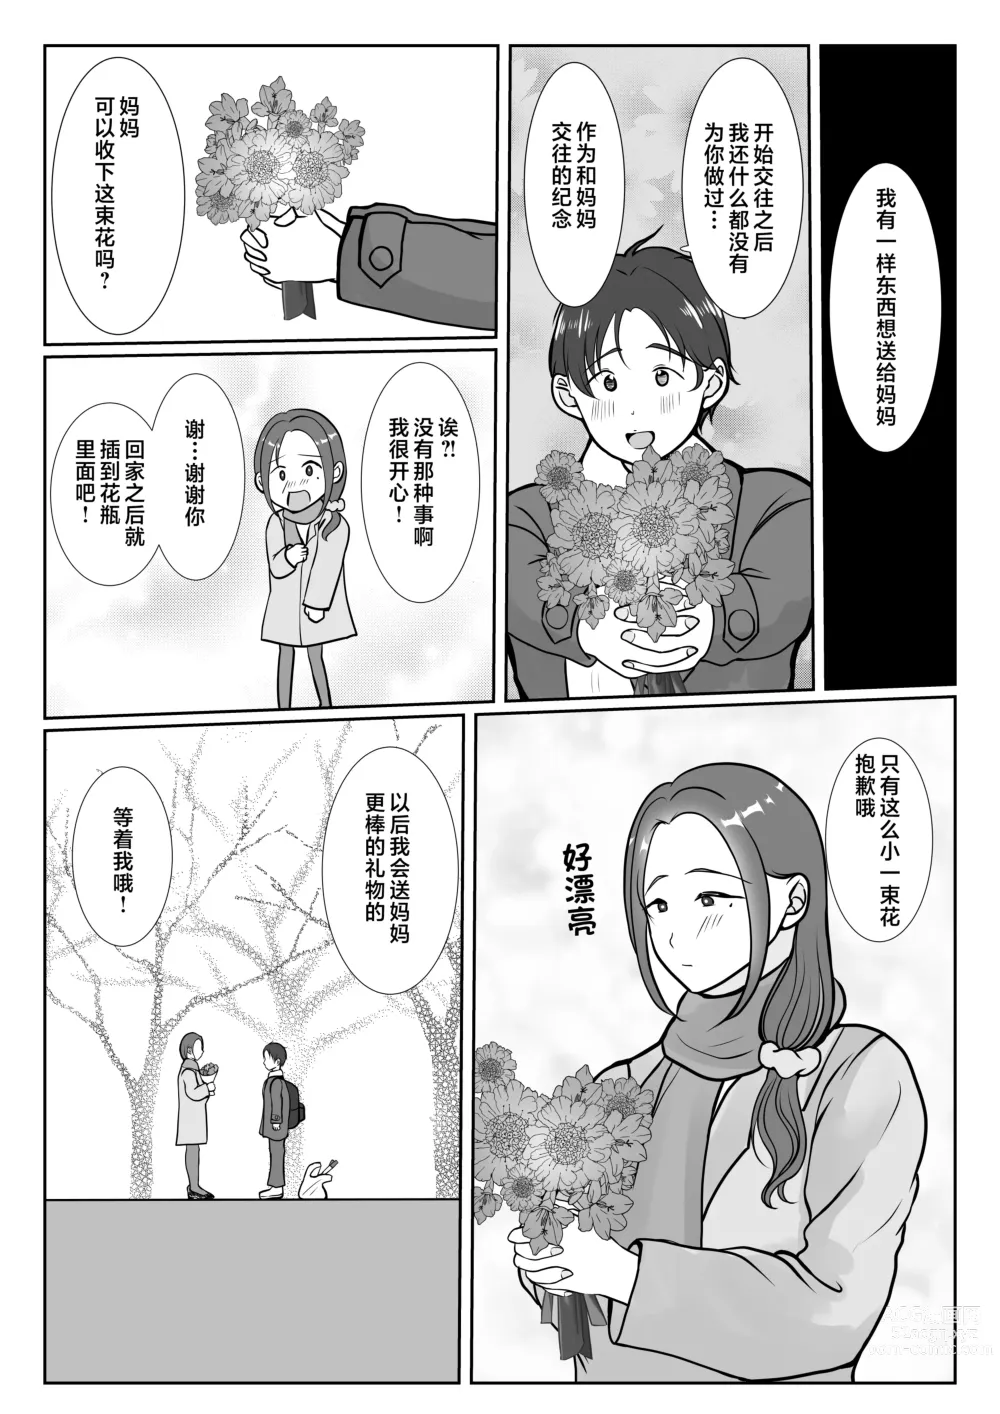 Page 43 of doujinshi Boku wa Haha ni Gachikoi Shiteru 1